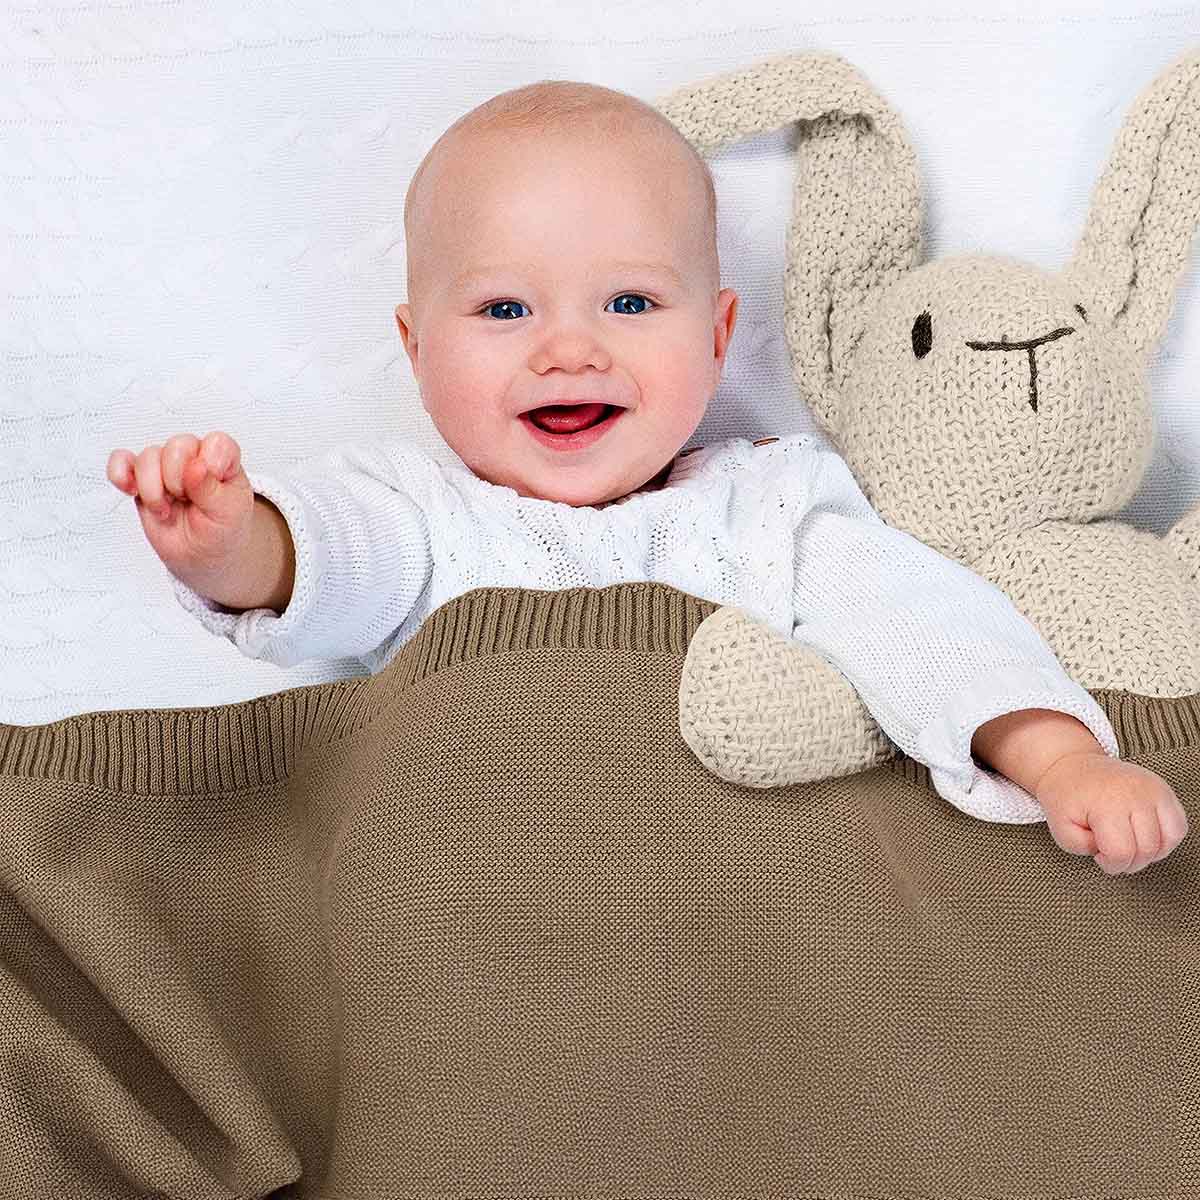 Glückliches Baby liegt im Bett, eingedeckt in taupe farbene Bio-Baumwolldecke. Es lächelt und winkt in die Kamera.